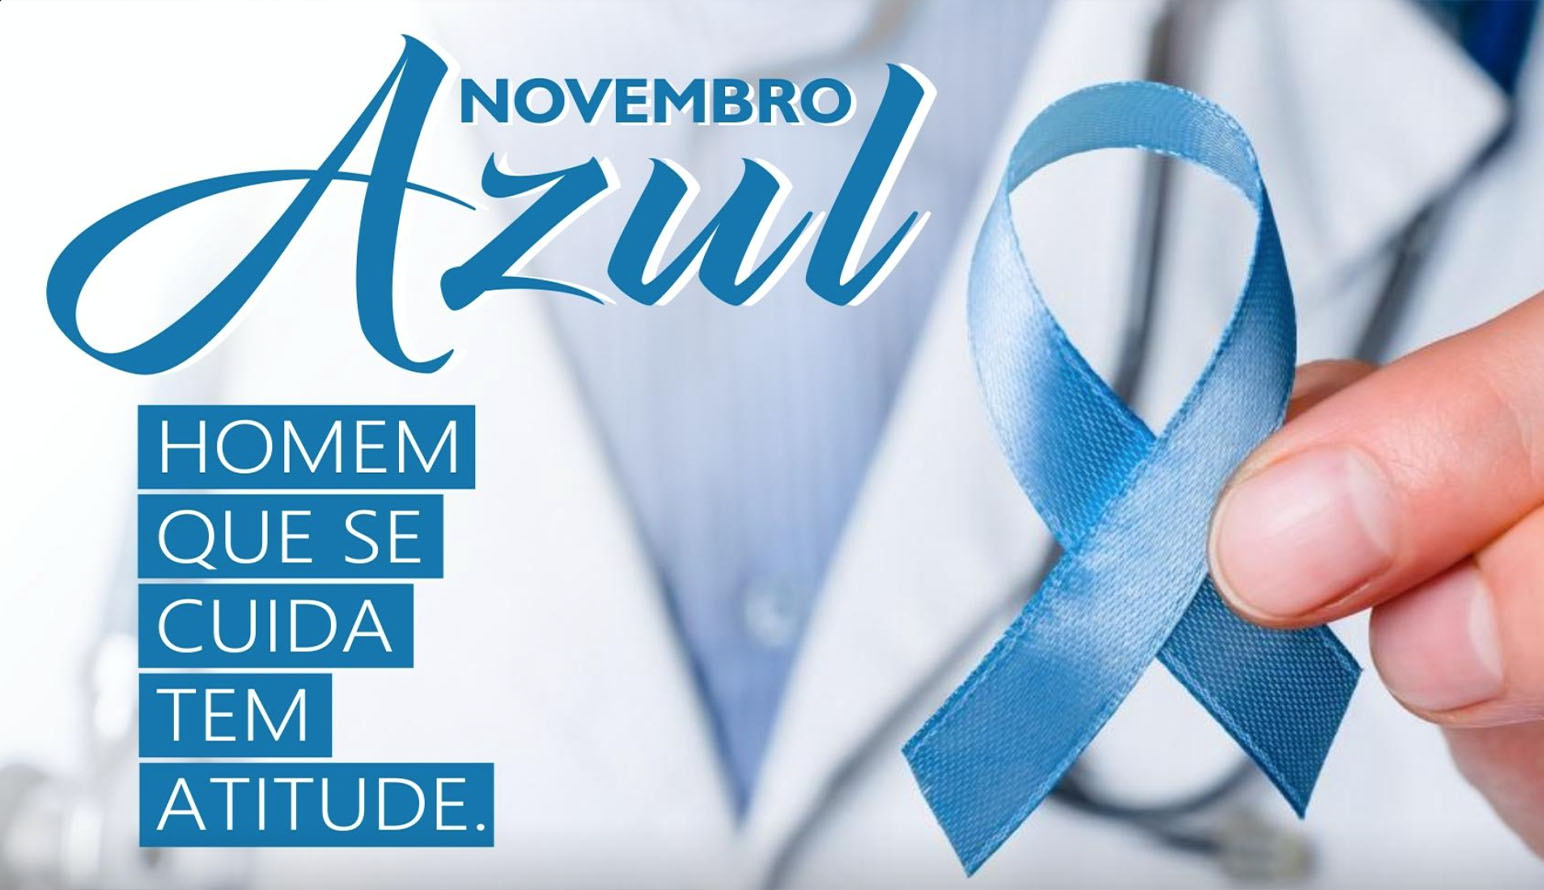 Novembro Azul: Mês de conscientização sobre a saúde do homem